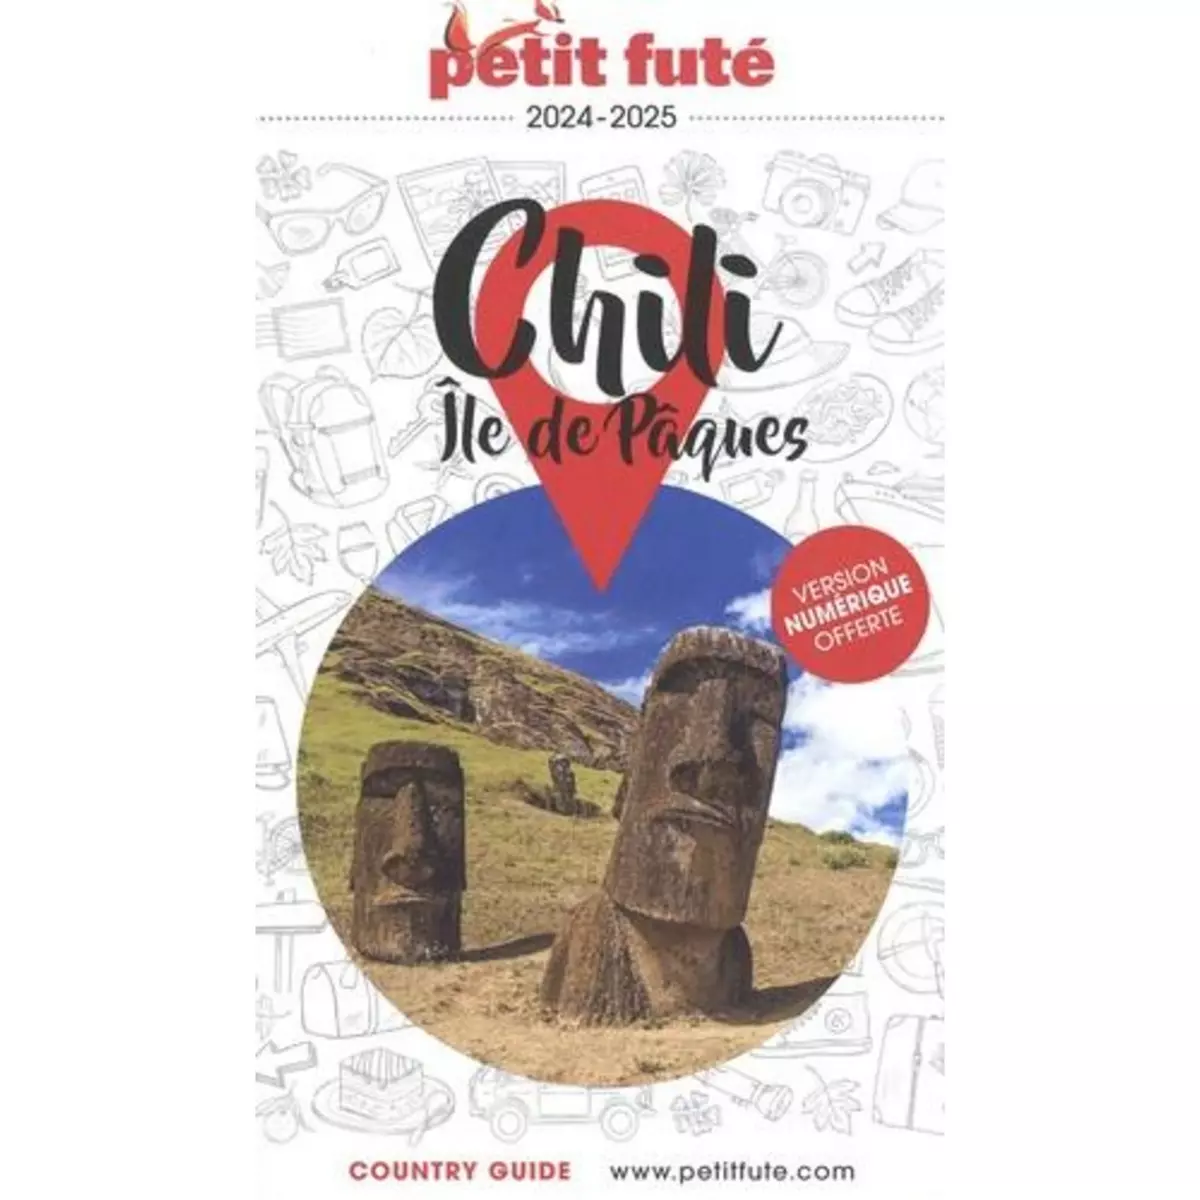  PETIT FUTE CHILI - ILE DE PACQUES. EDITION 2024, Petit Futé